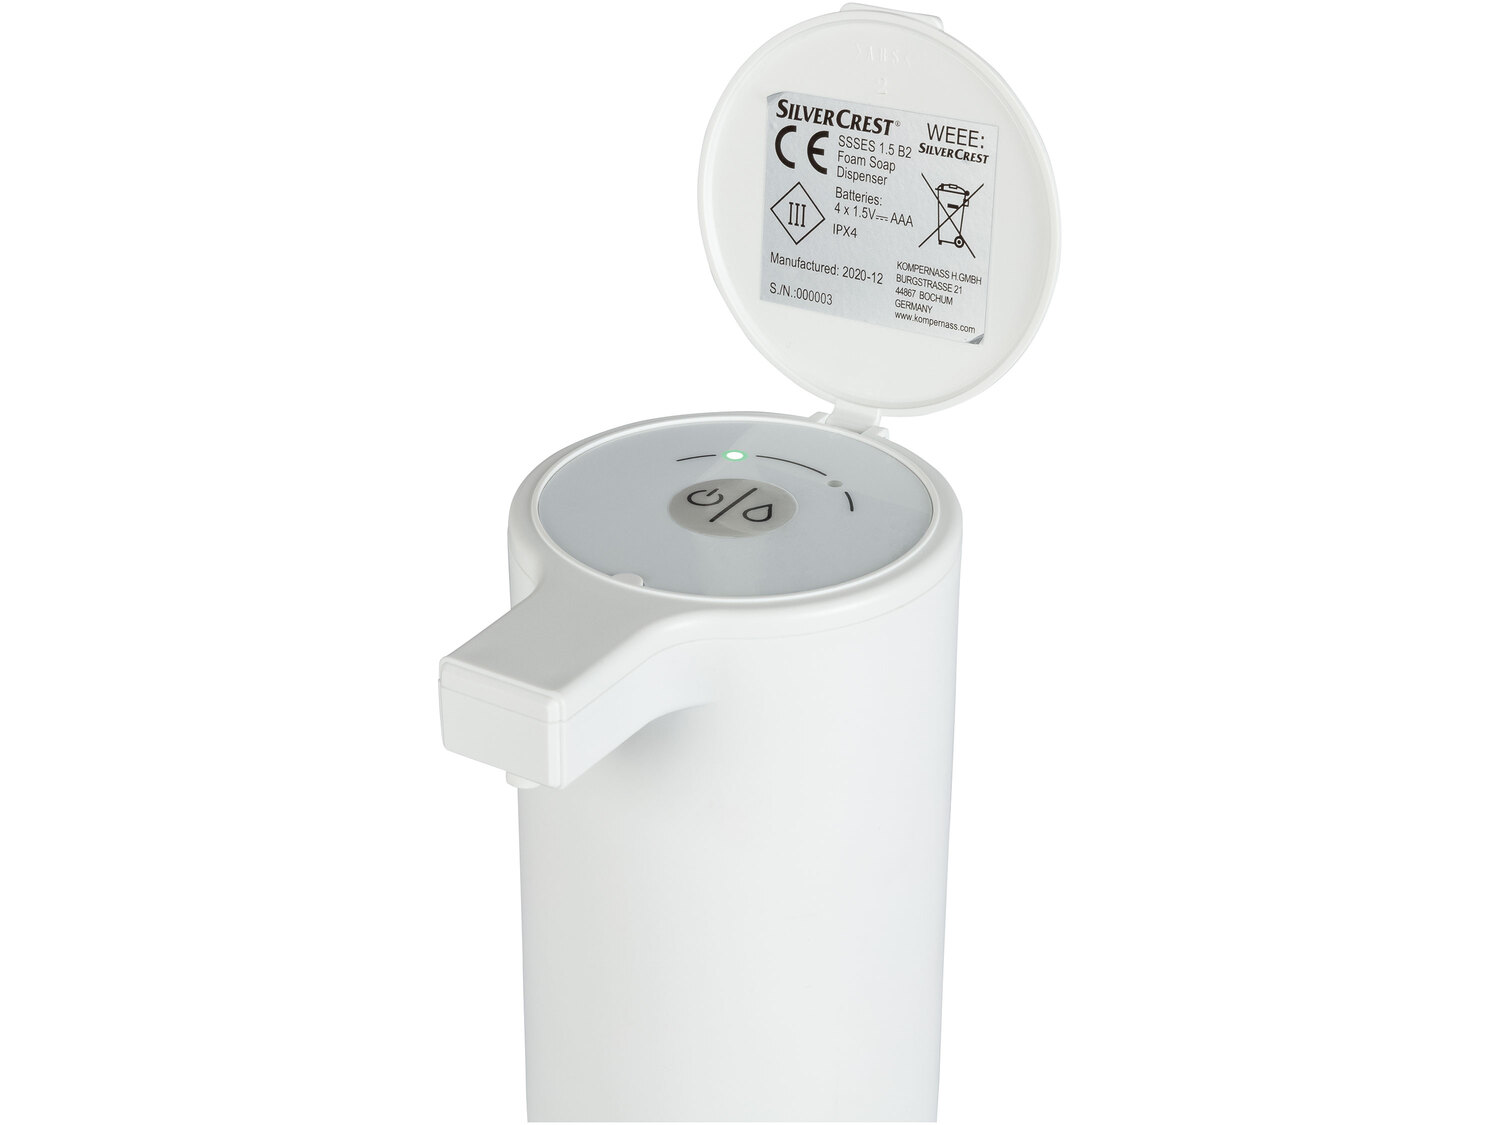 Automatyczny dozownik mydła z czujnikiem ruchu Silvercrest, cena 54,90 PLN 
- pojemność ...